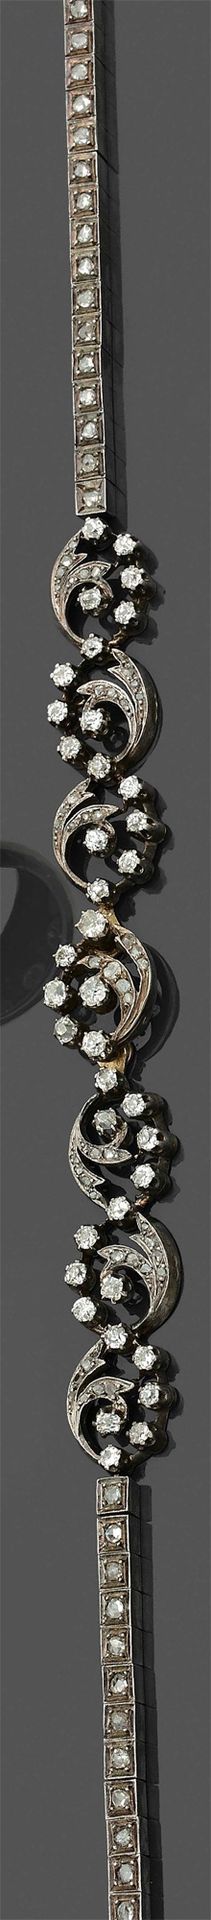 Null 玫瑰金(750‰)和银(925‰)半宝石 "volutes"，包括一条项链和一条镂空手镯，镶嵌老式切割和玫瑰式切割钻石。
法国作品，19世纪末。
项链&hellip;